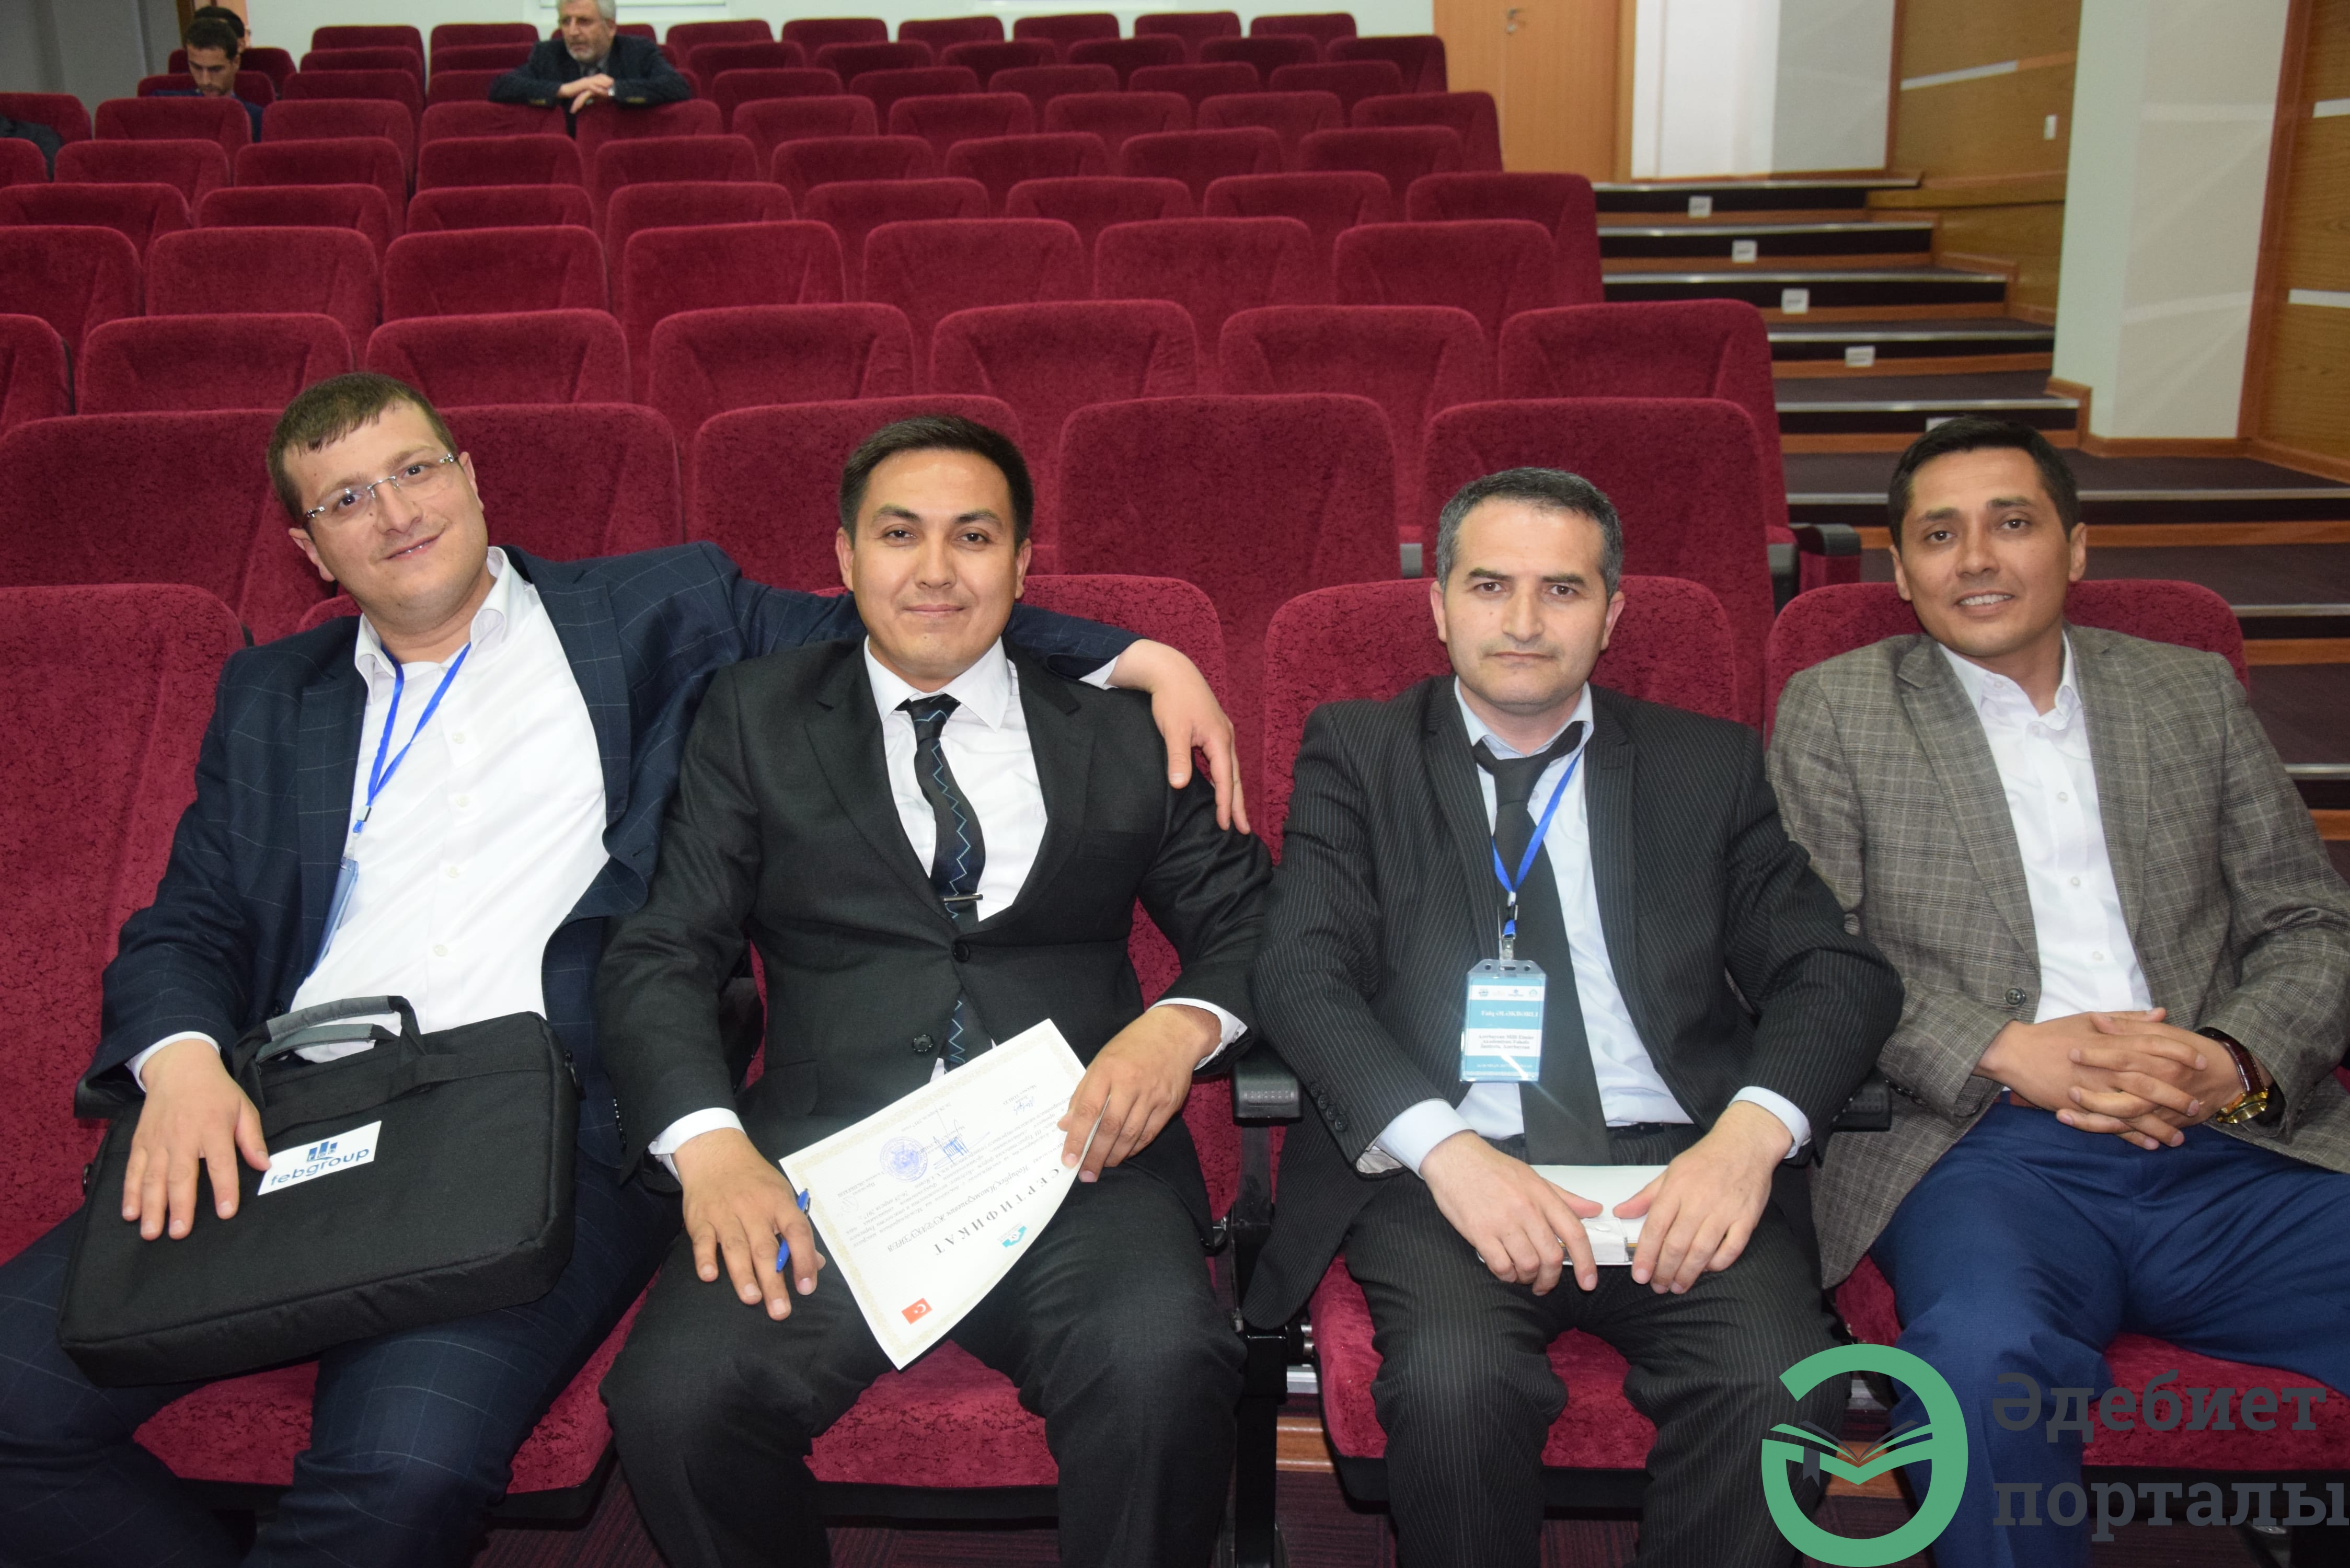 Халықаралық әлеуметтік ғылымдар конгресі: ІІІ Түркістан форумы  - фото 31 - adebiportal.kz